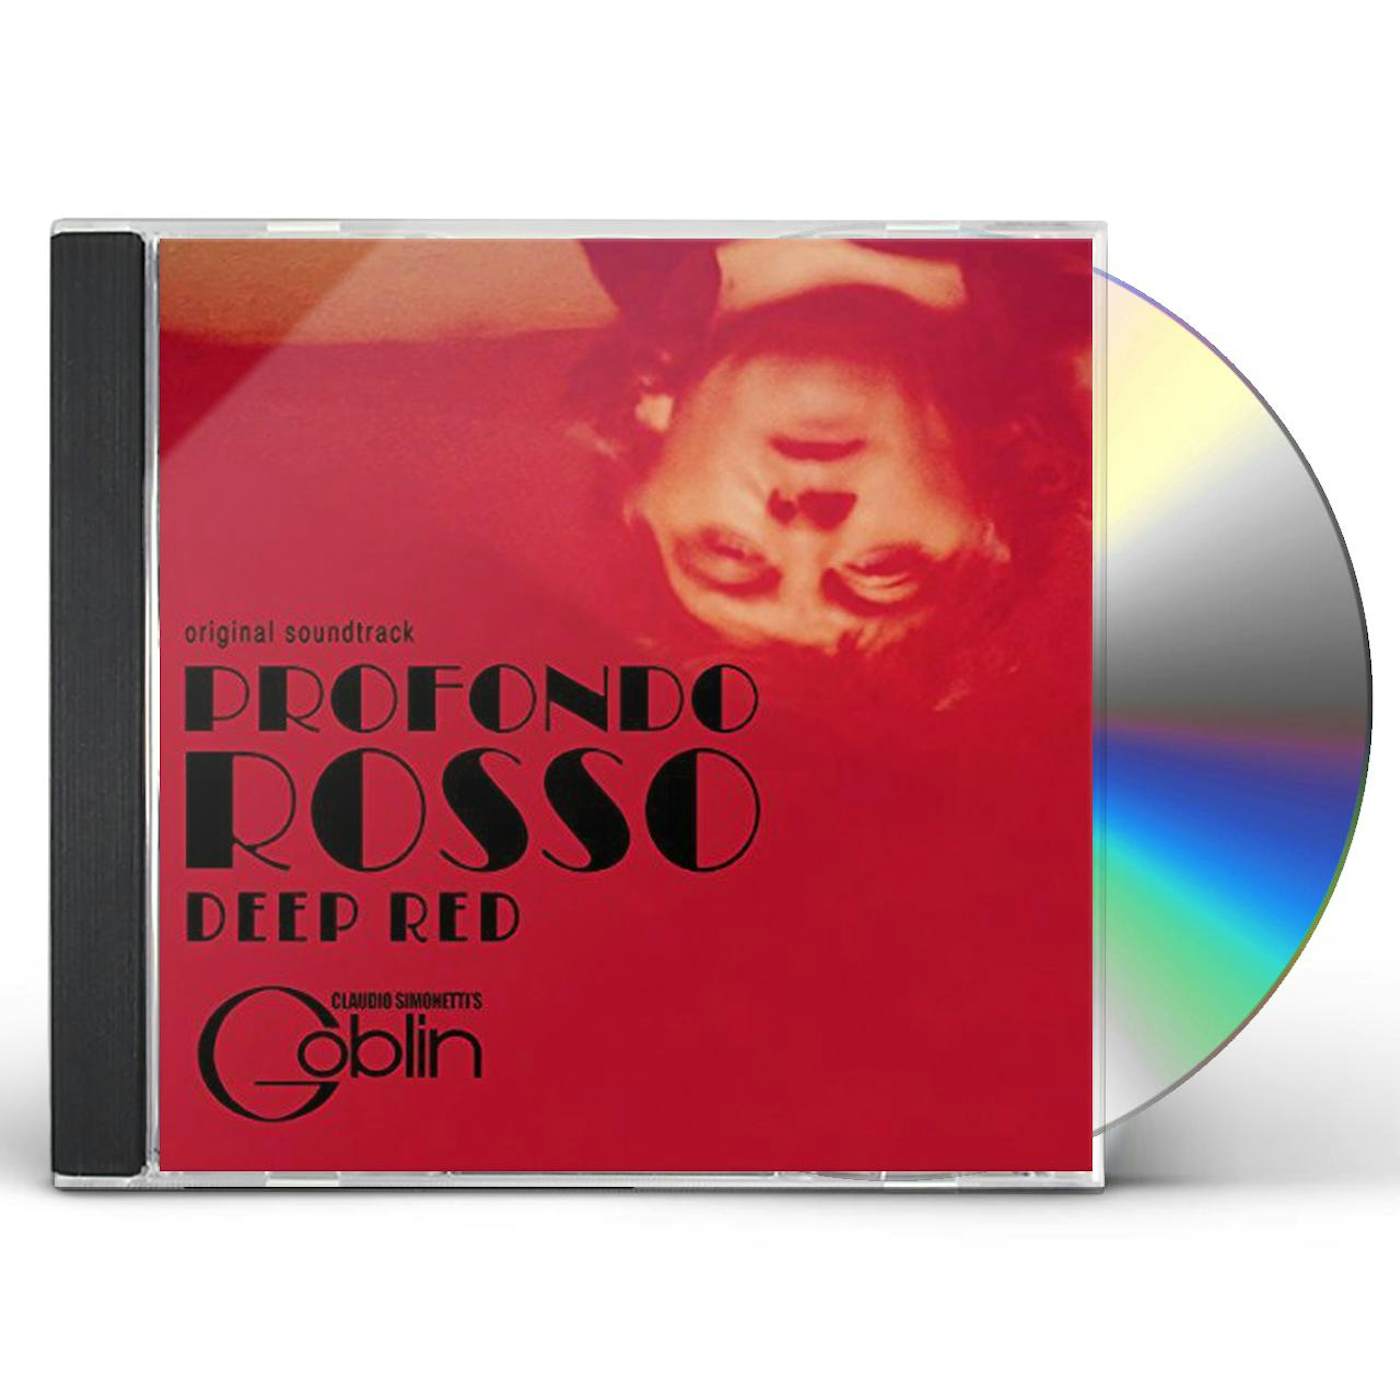 Claudio Simonetti's Goblin DEEP RED / PROFONDO ROSSO - Original Soundtrack CD